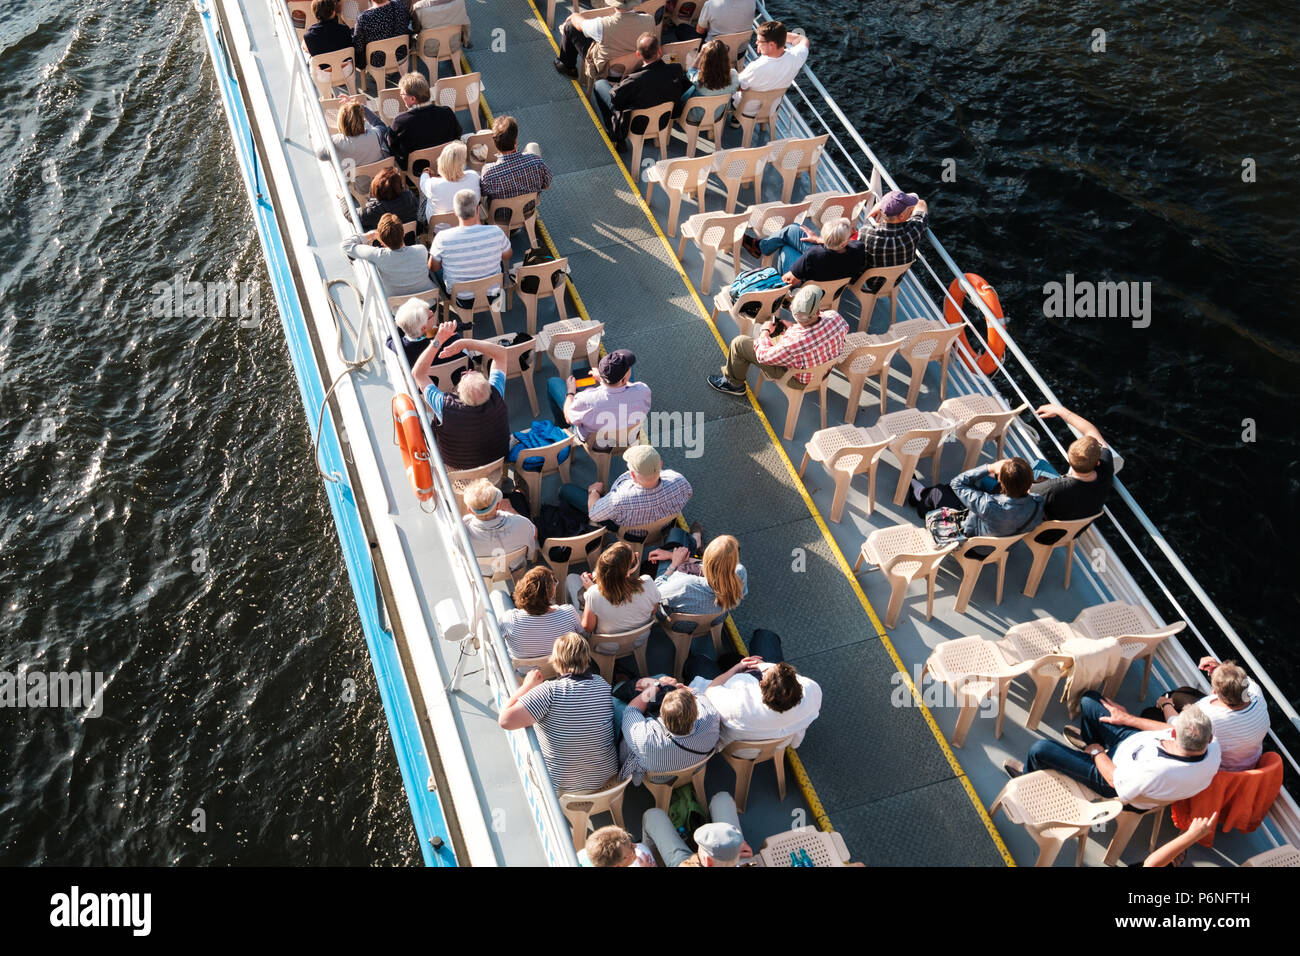 Berlino, Germania - Giugno 2018: gruppo di turisti / persone sulle visite turistiche in barca da sopra a Berlino, Germania Foto Stock